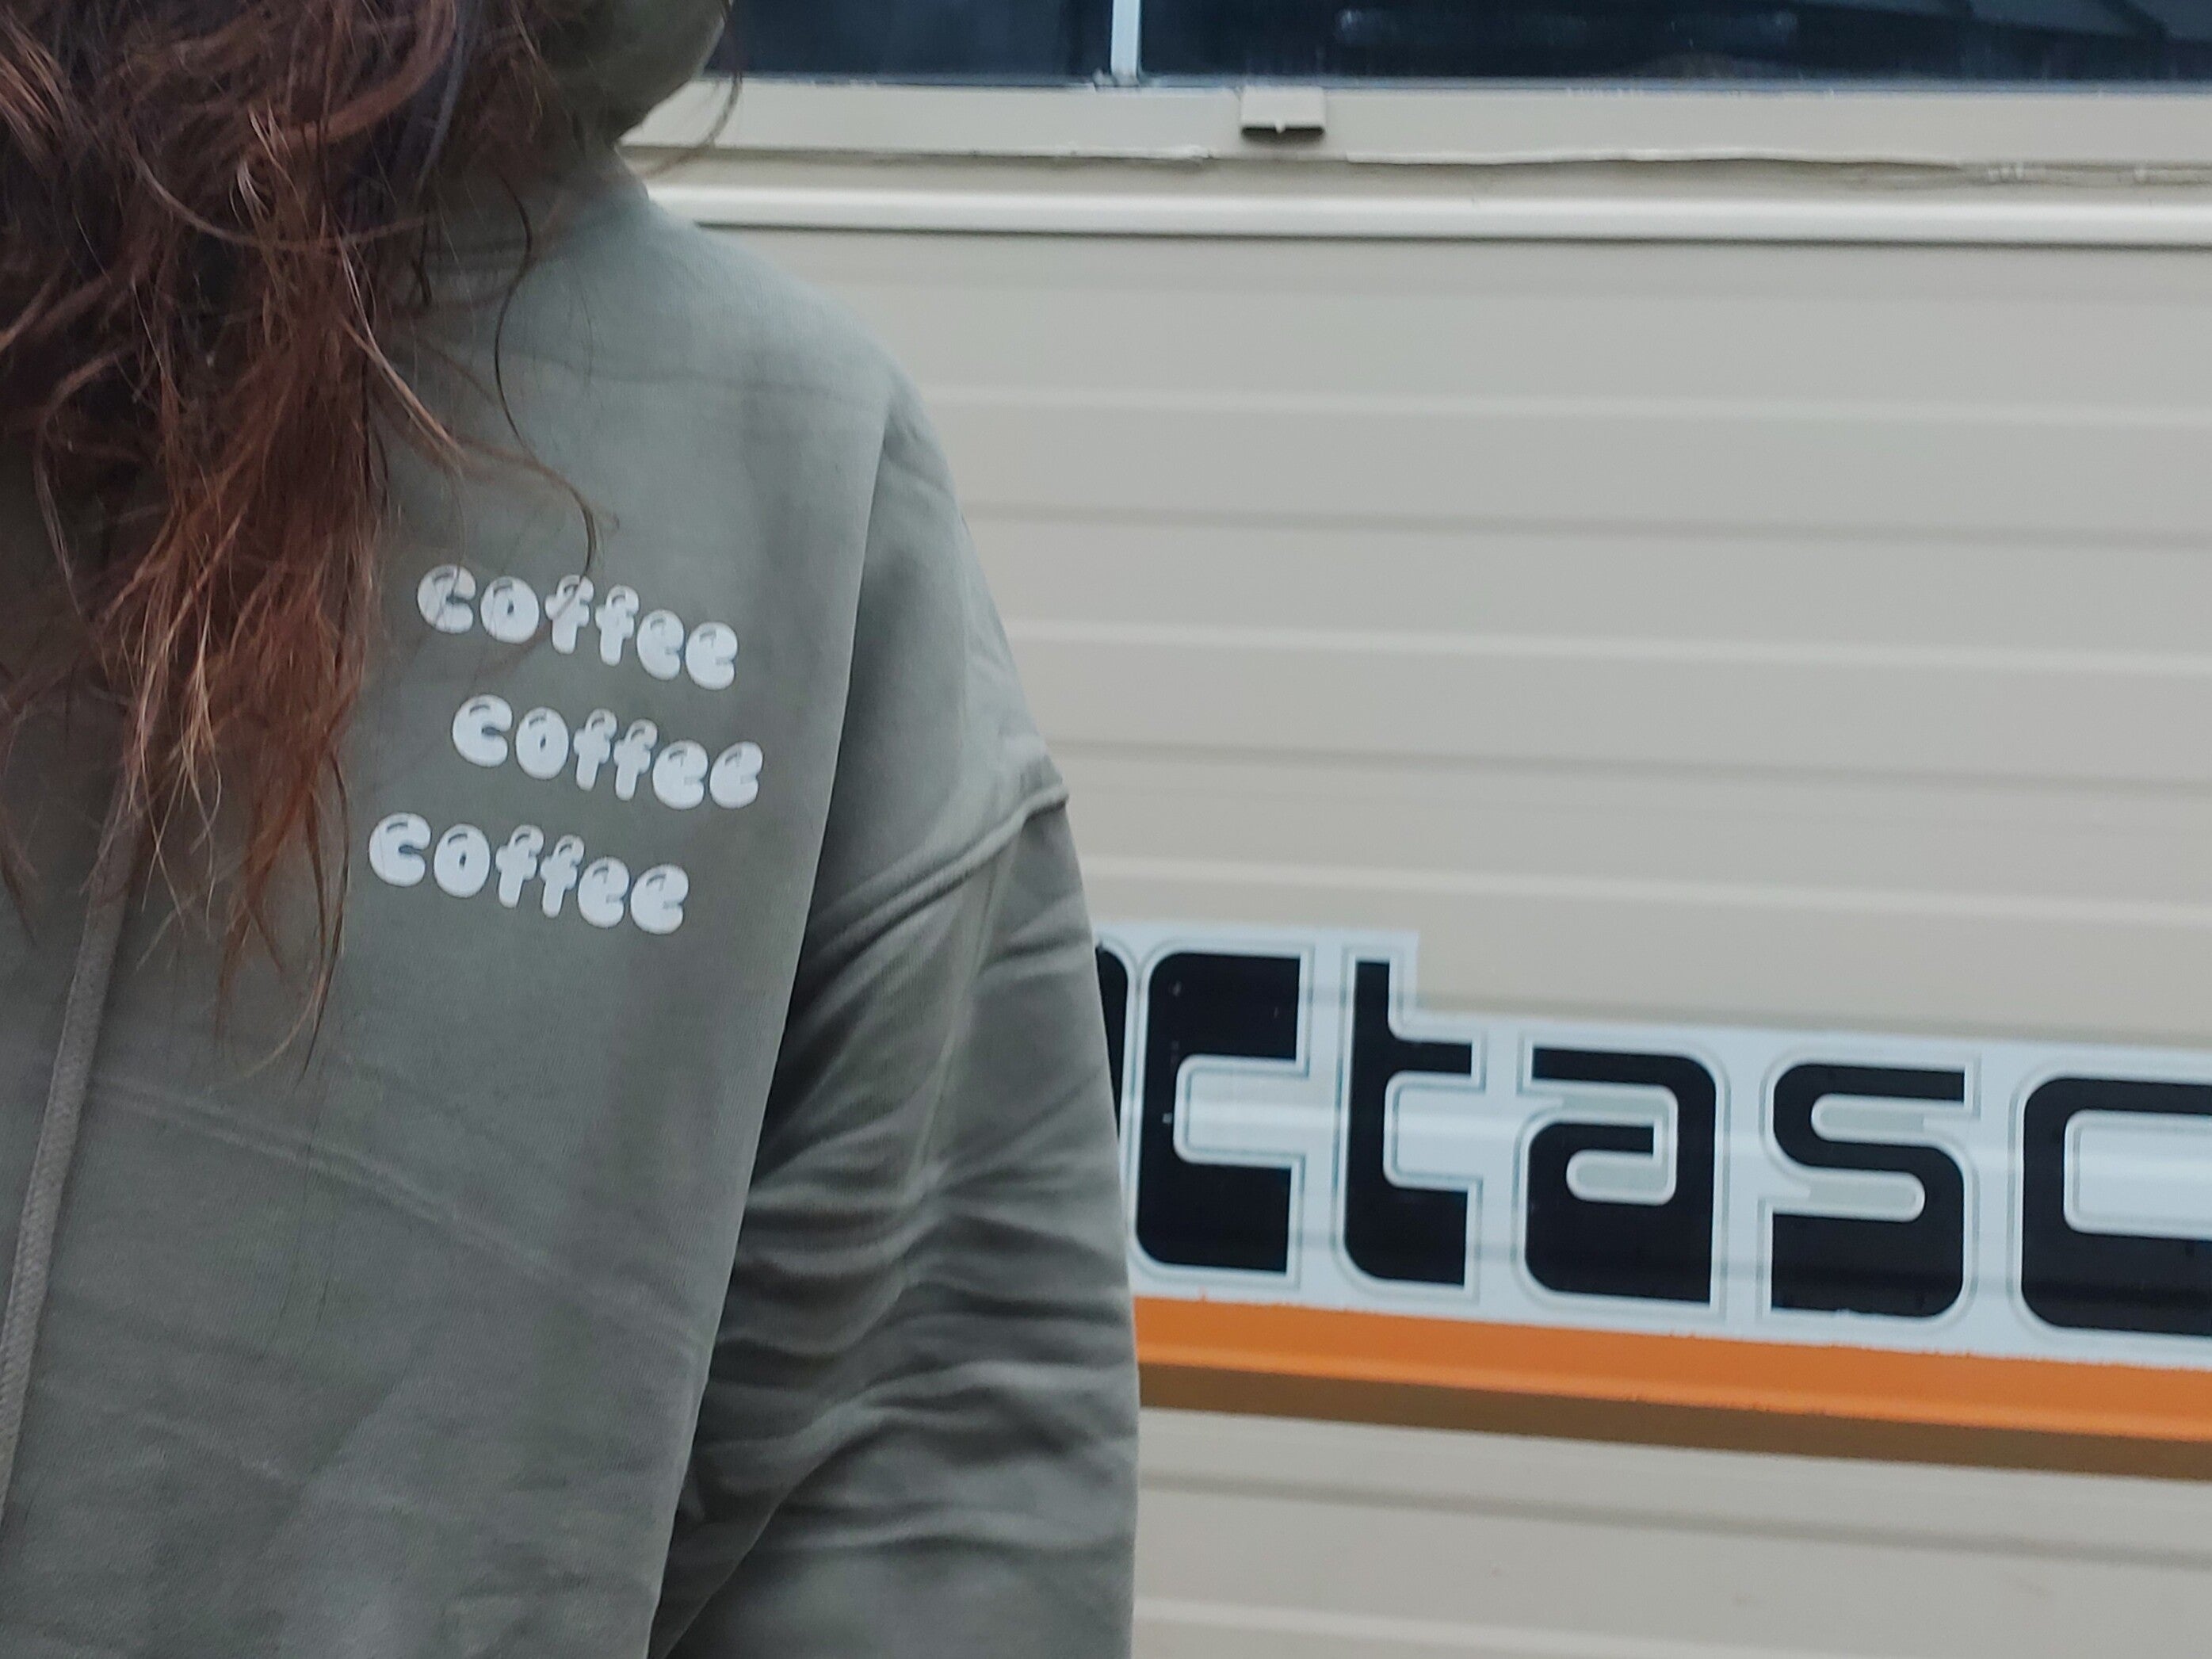 //Coffee coffee coffee hoodie - Sage